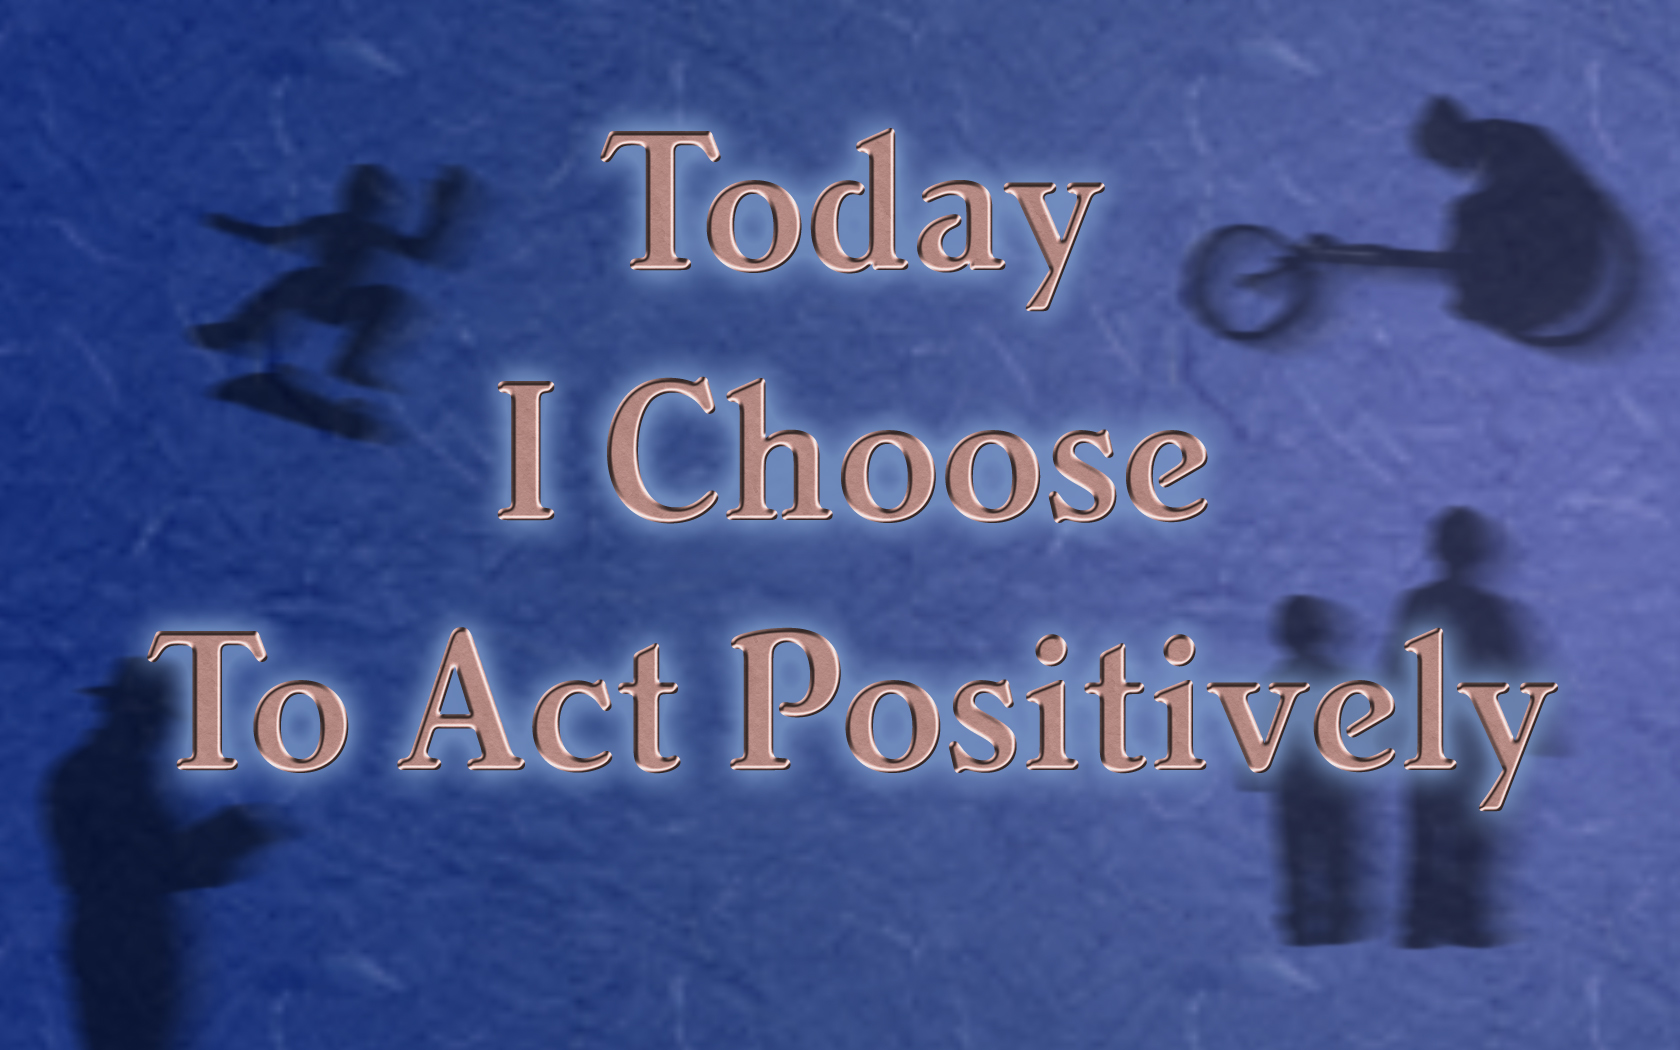 Positive Attitude Quotes Wallpaper Act Positively Desktop